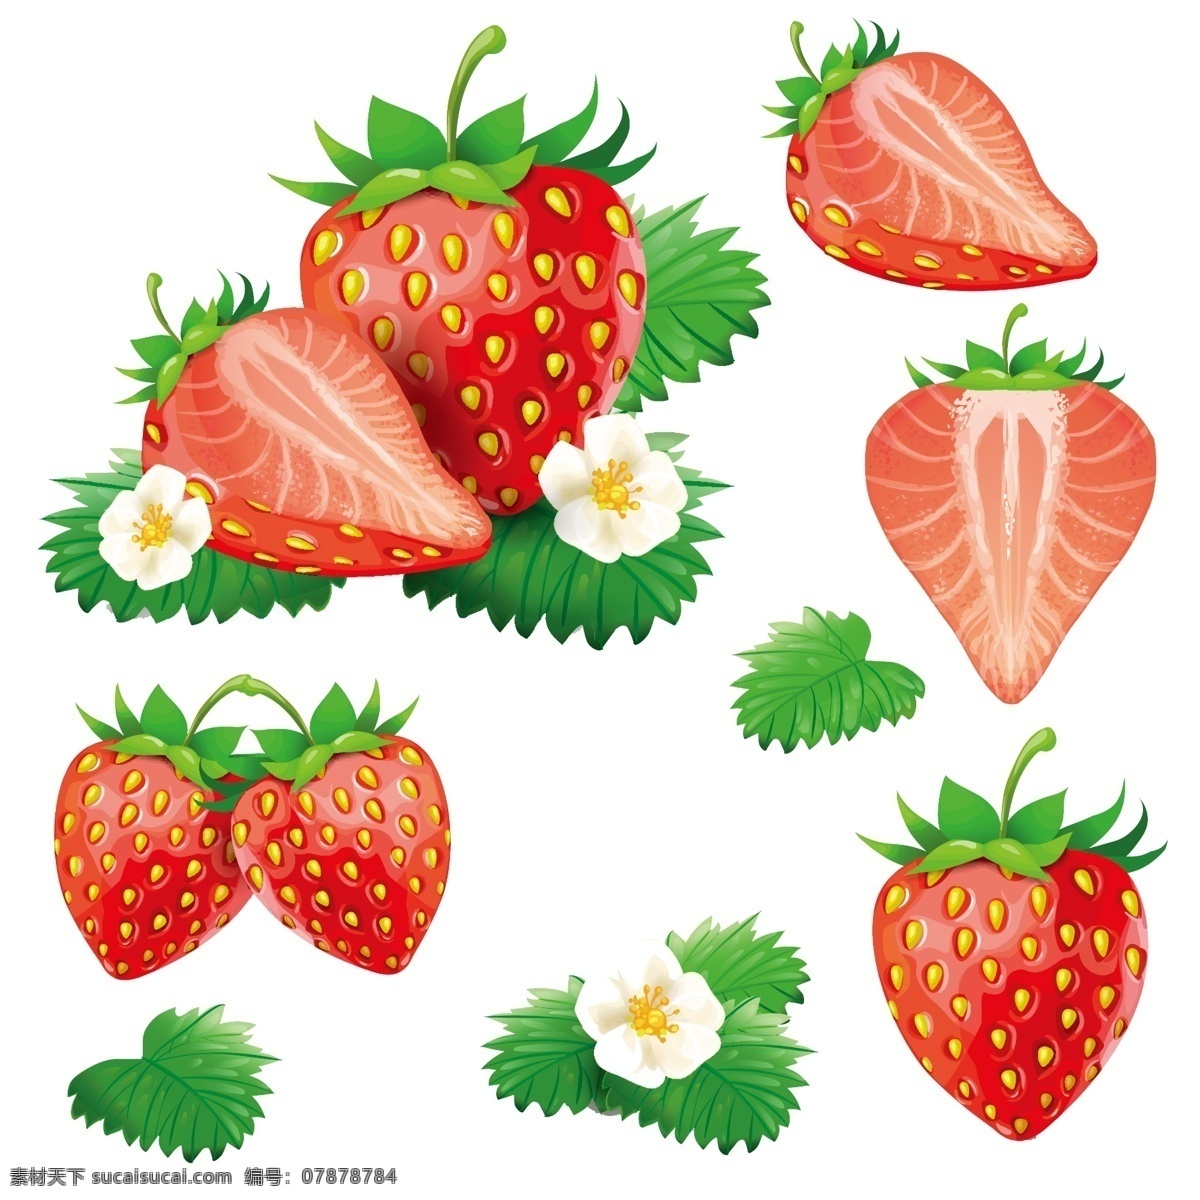 卡通草莓 草莓 矢量草莓 可爱草莓 草莓形象